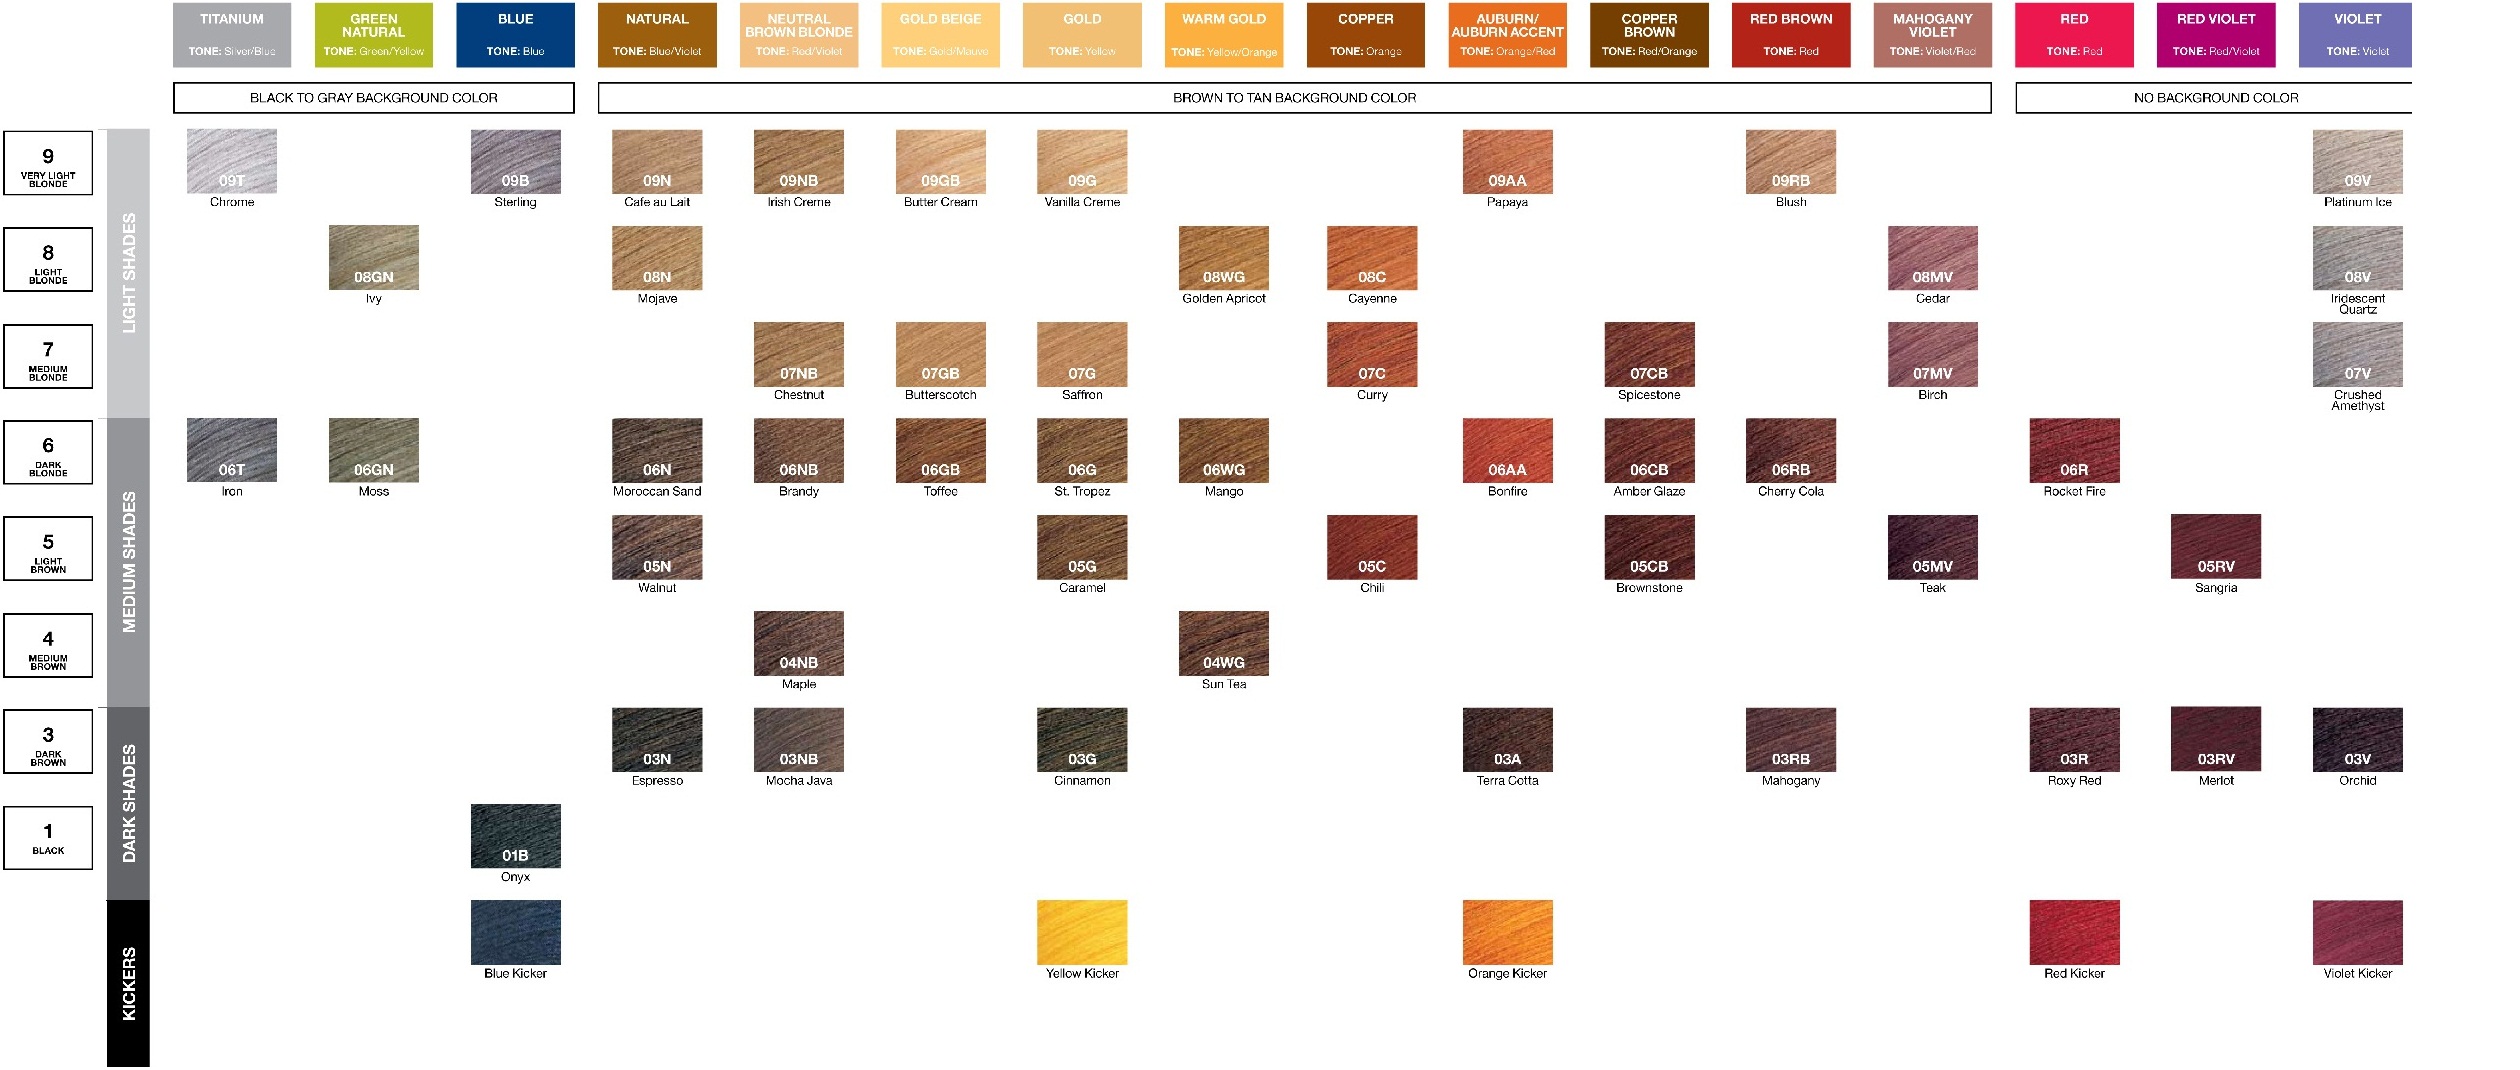 Redken Hair Dye Color Chart